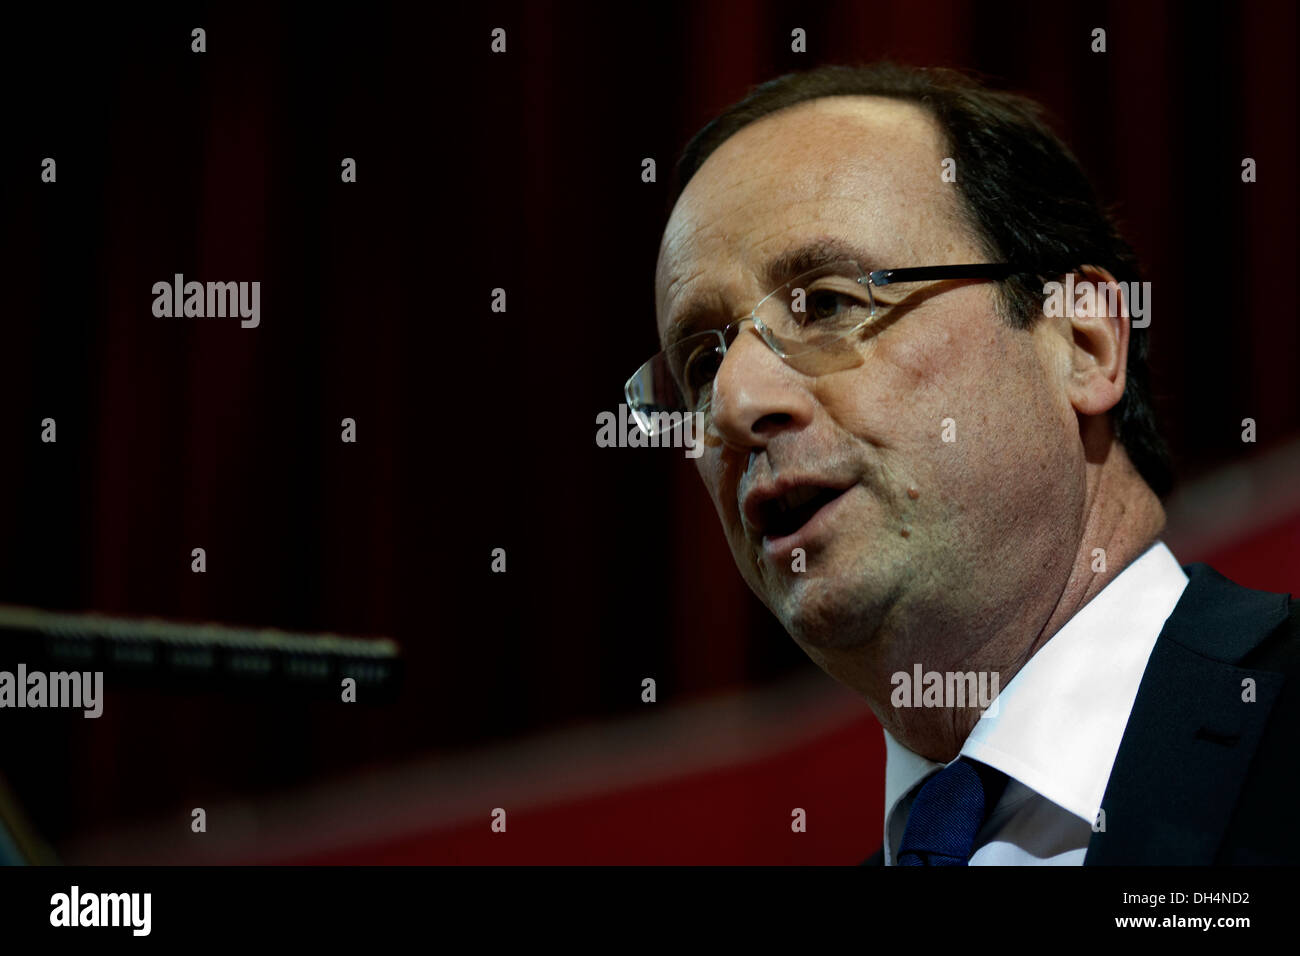 Candidata socialista per le elezioni presidenziali francesi Francois Hollande è visto in King's Collage durante la sua visita in Londo Foto Stock